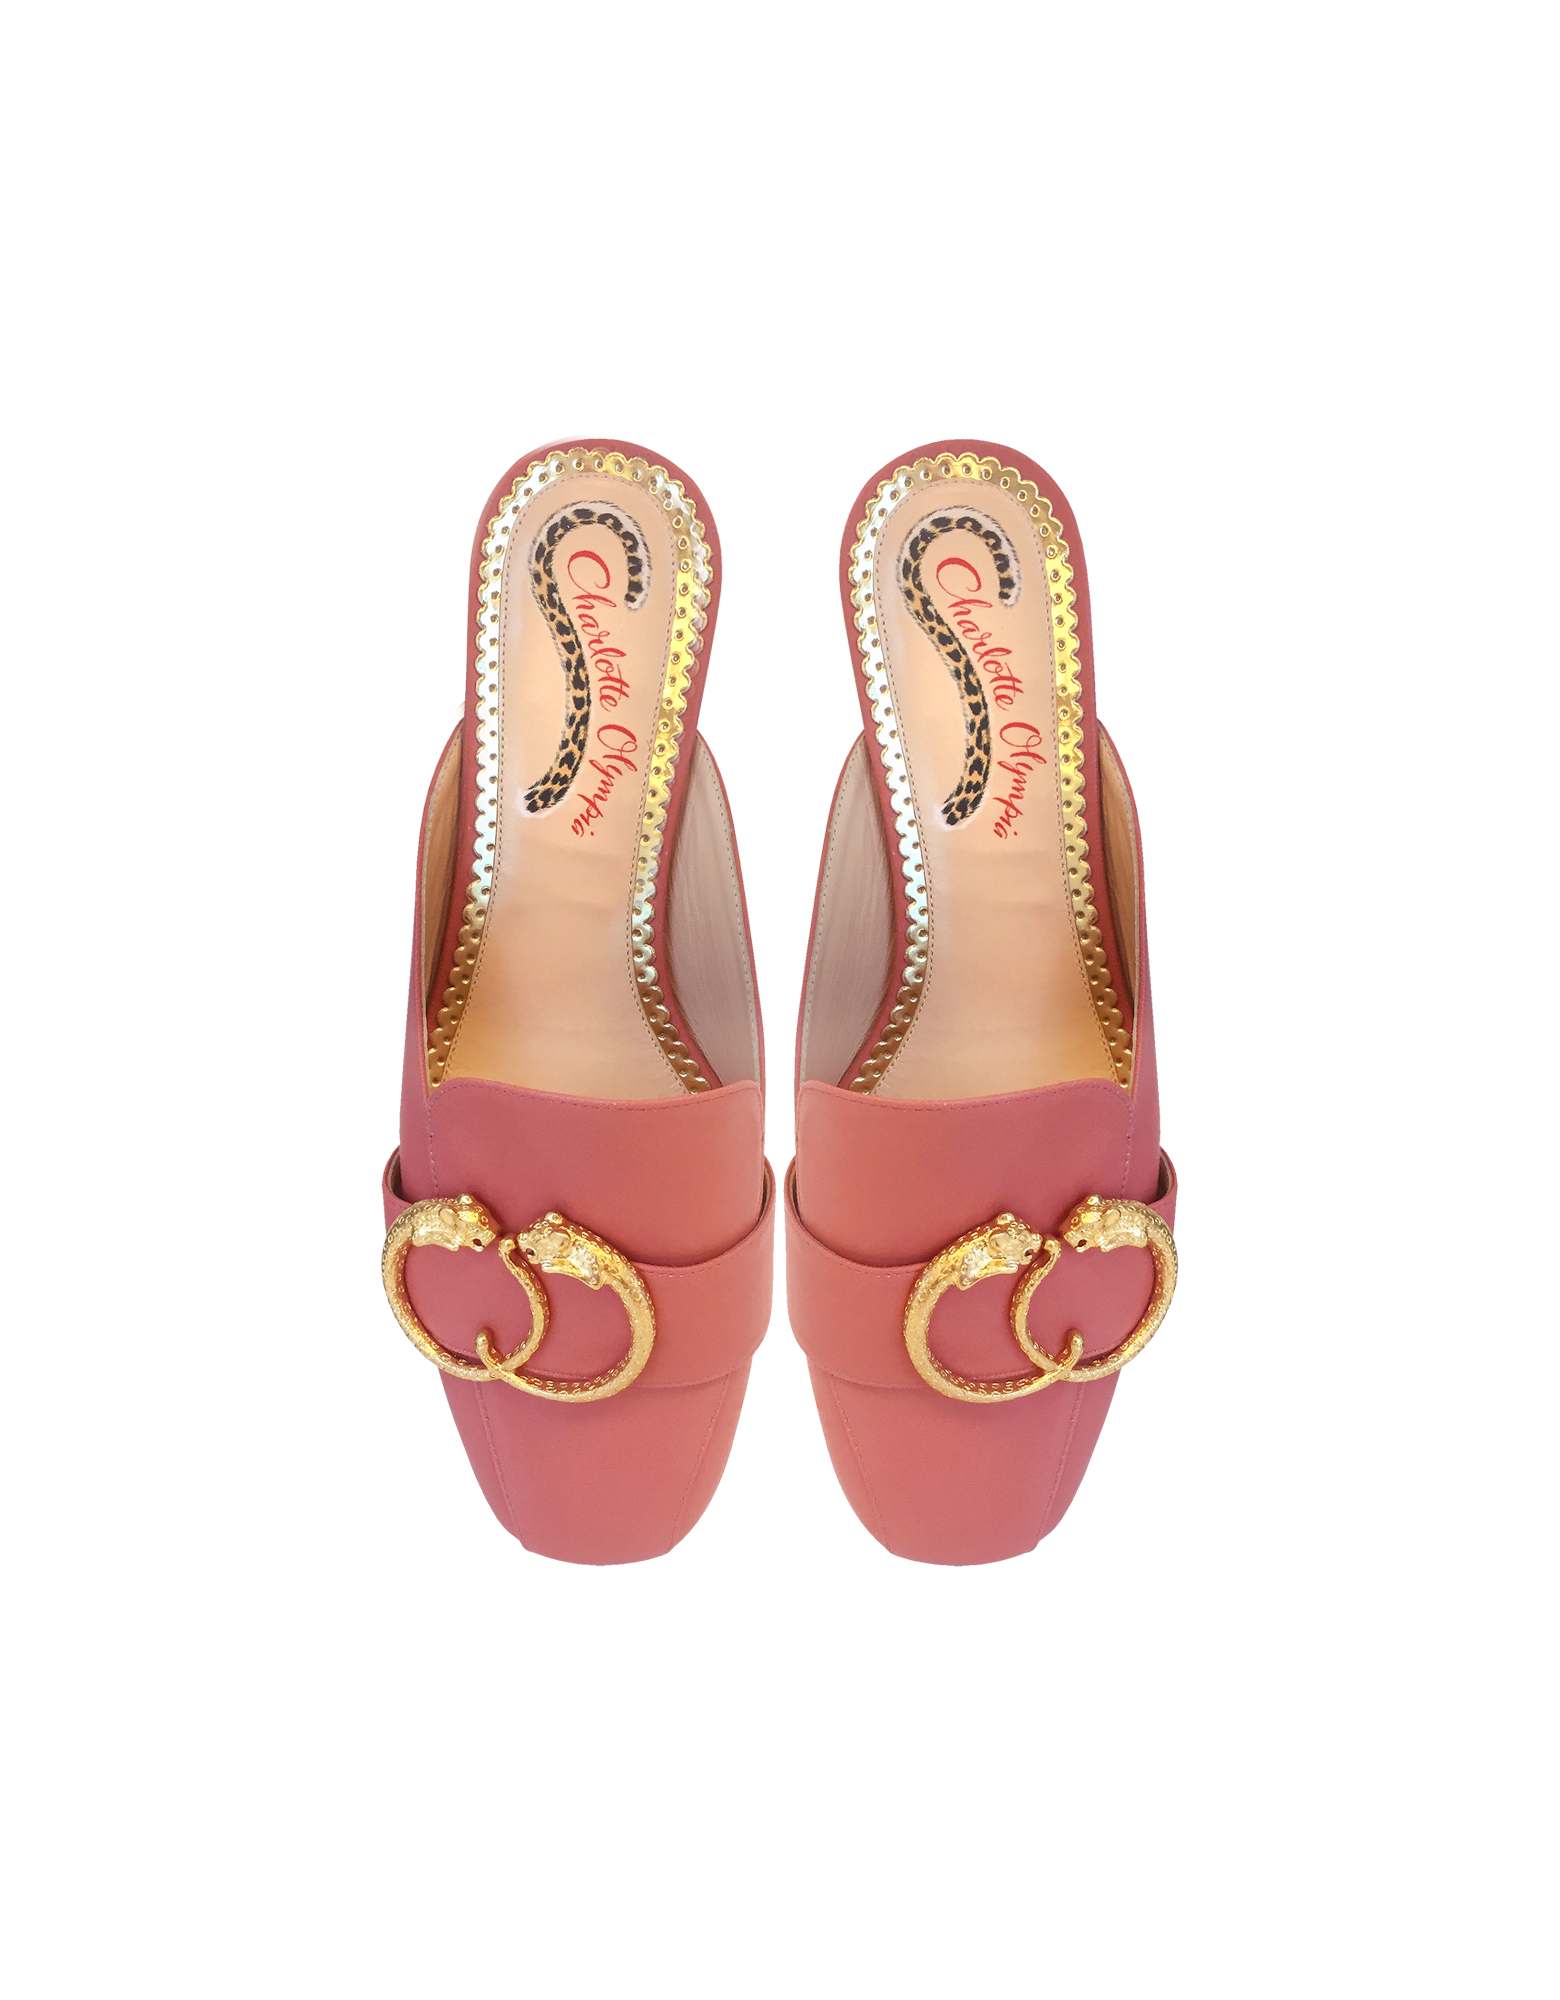 漂亮粉红色皮革骡子鞋展示图